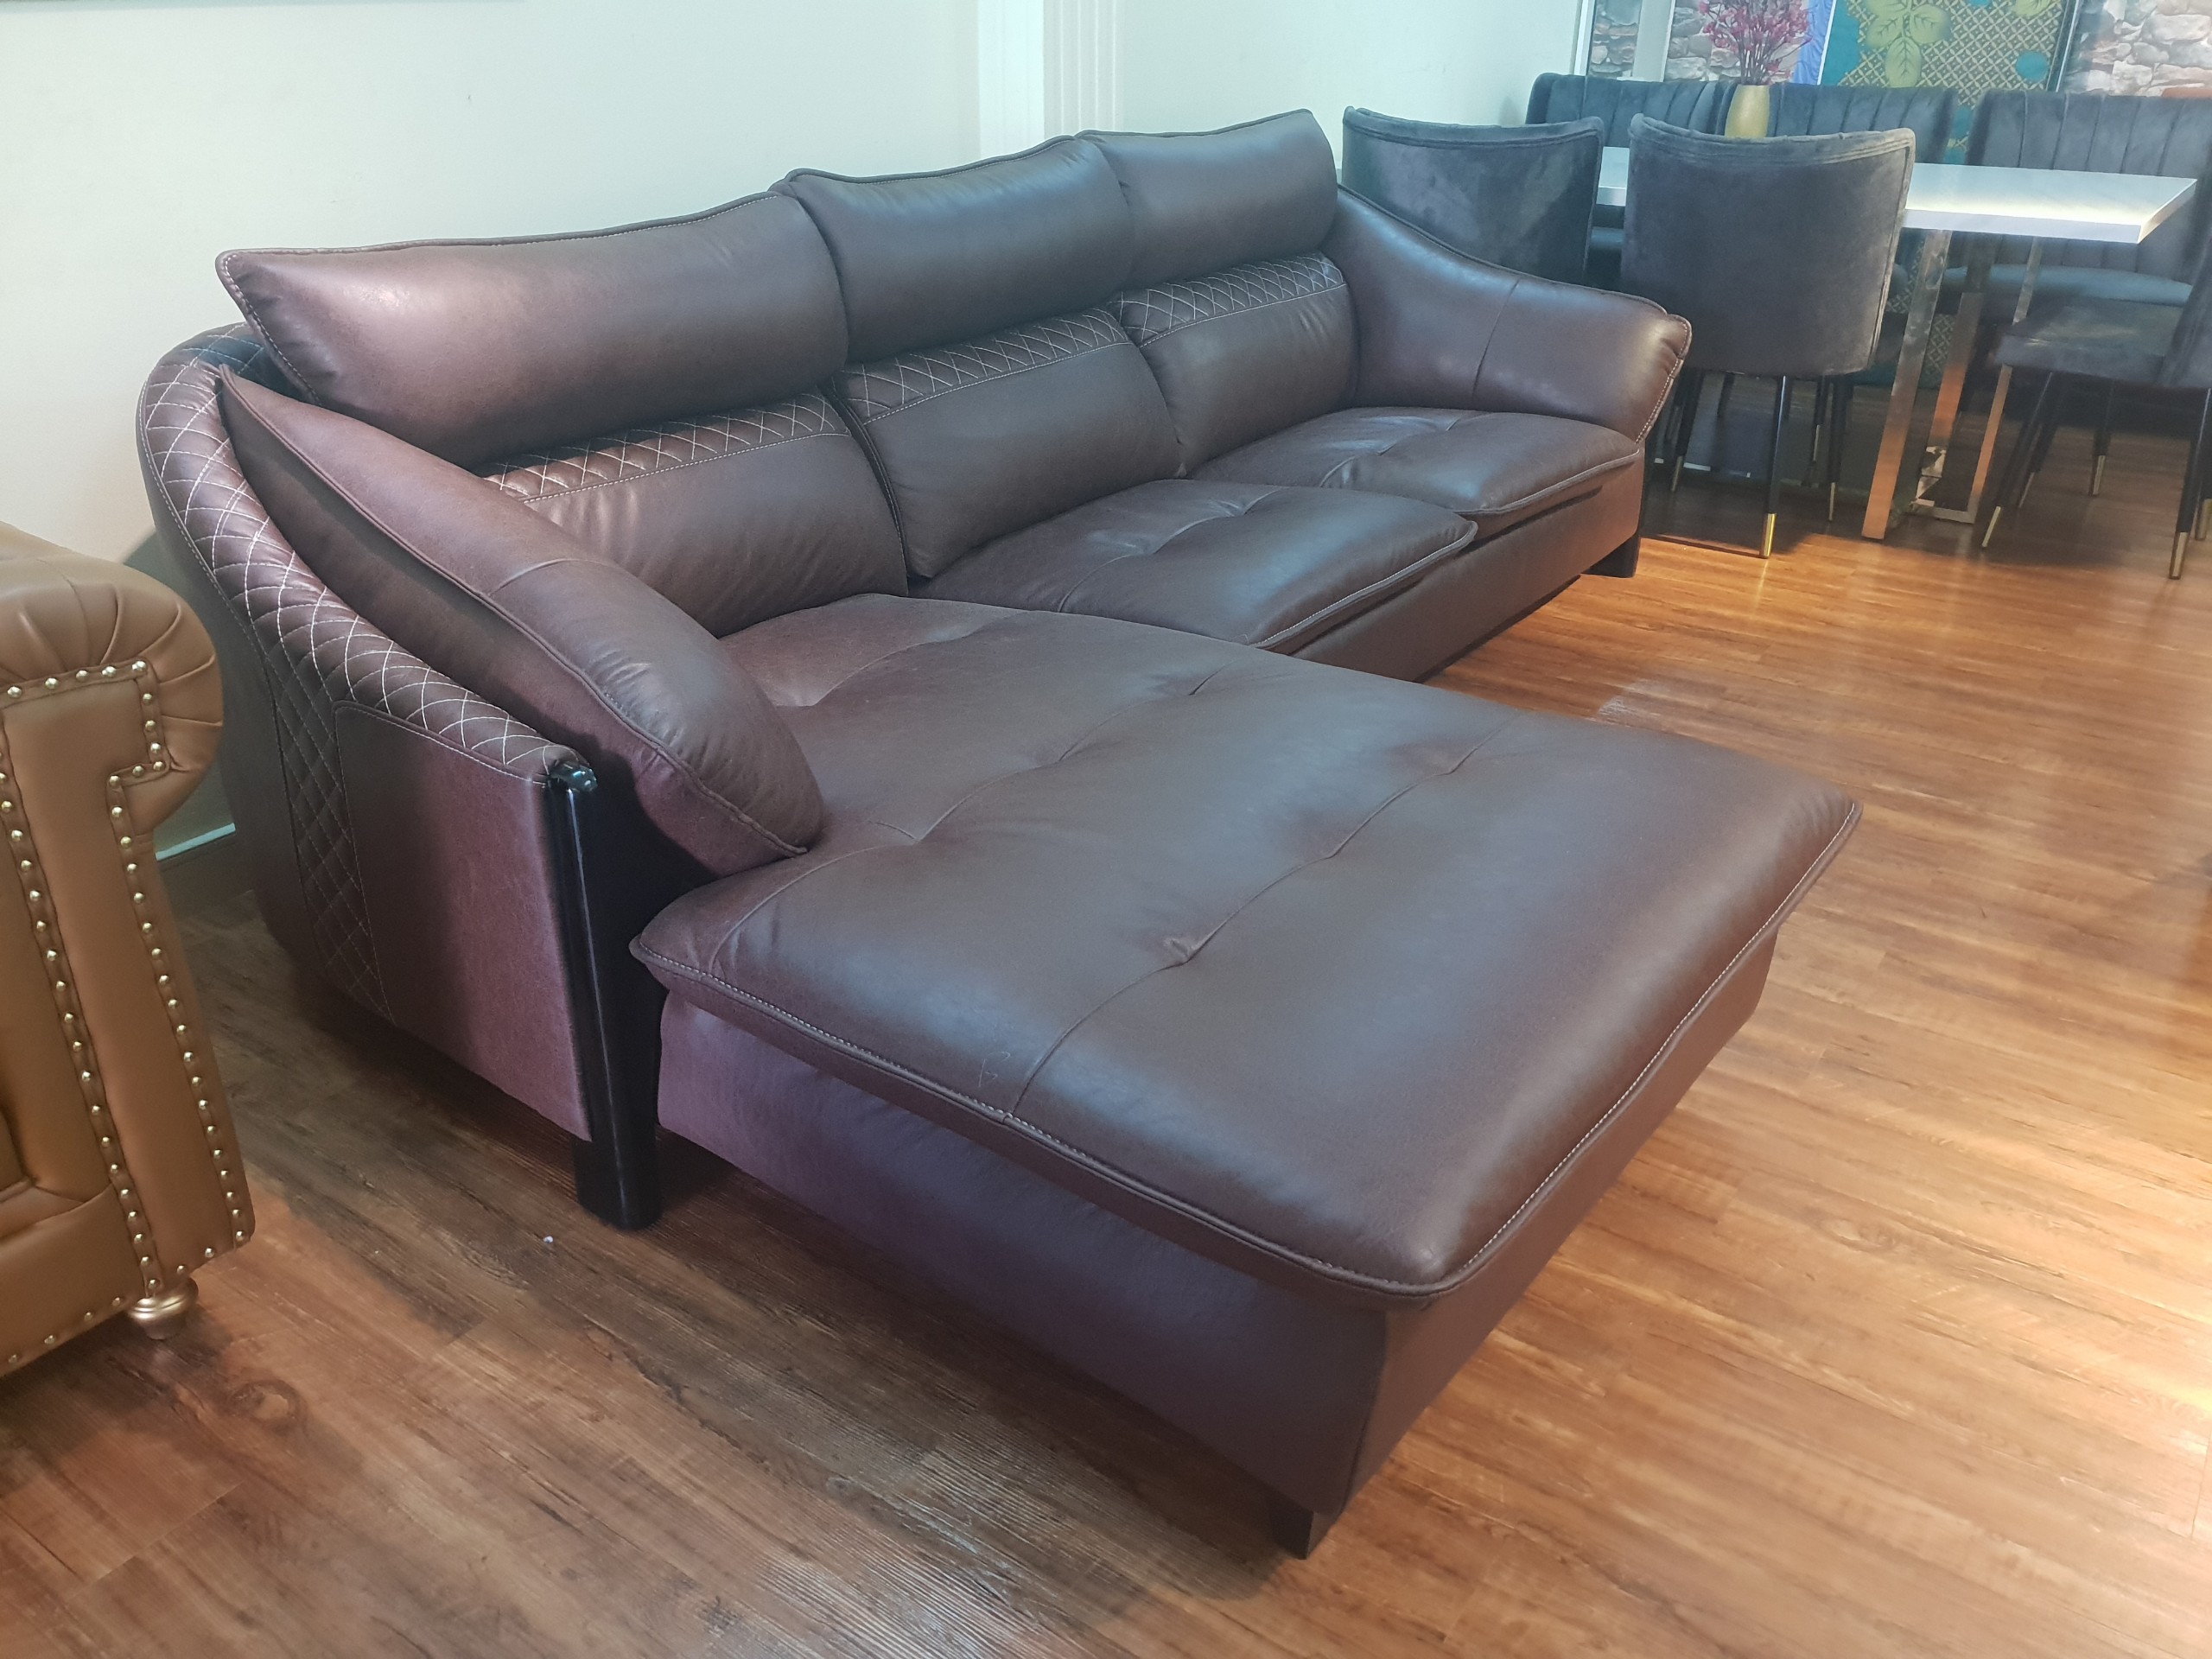 Bộ ghế sofa sang trọng cho phòng khách chữ L_Ghế màu nâu_Size 2700 x 1700